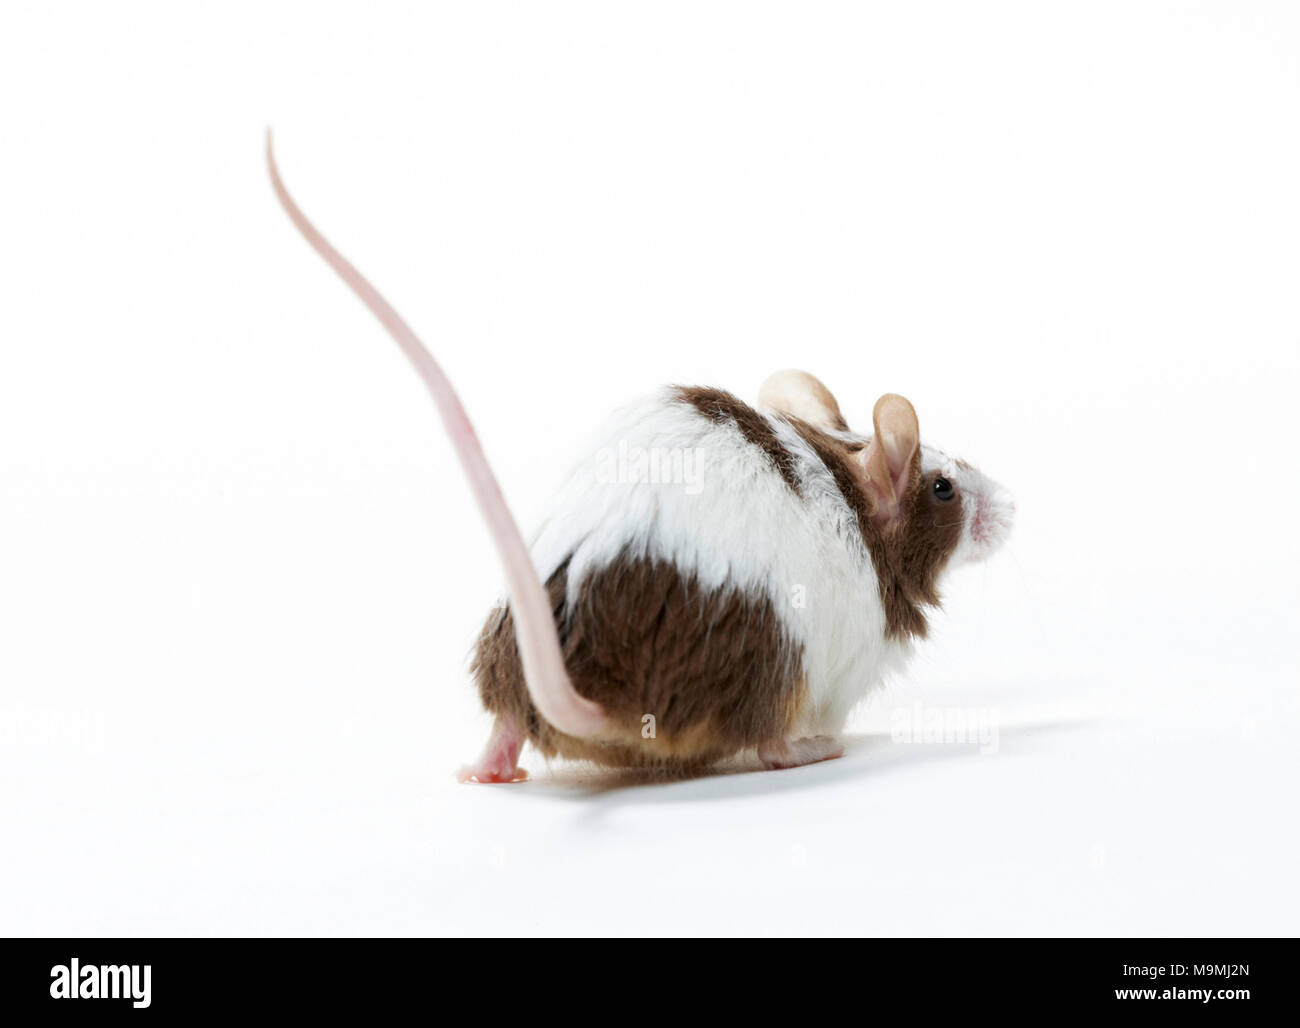 Fancy Mouse. In bicolore adulto a piedi, visto dalla parte posteriore. Studio Immagine contro uno sfondo bianco Foto Stock